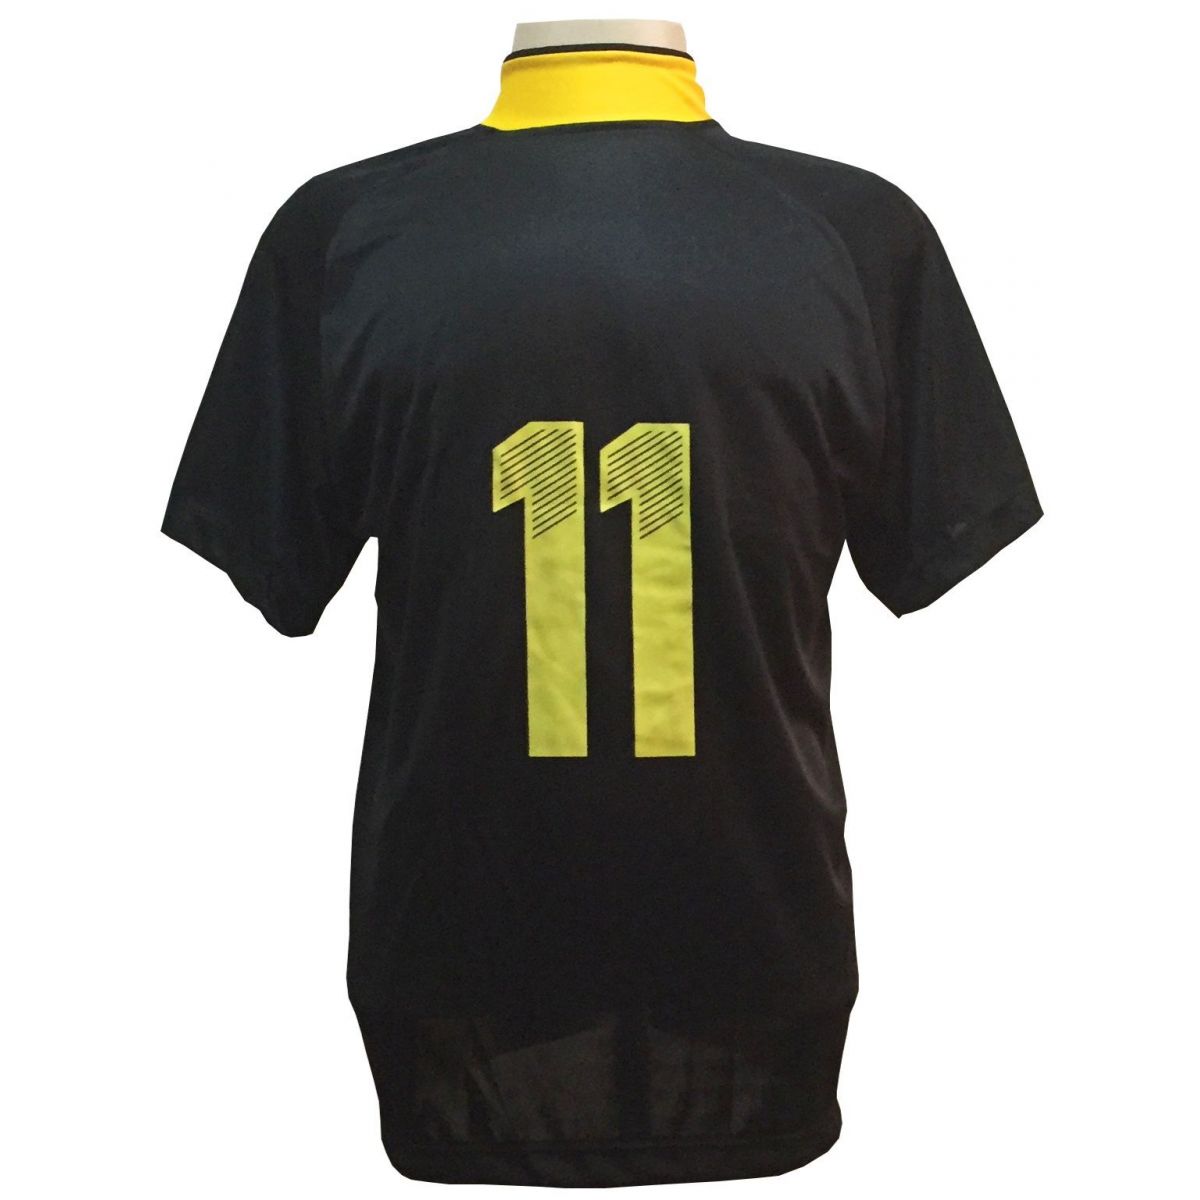 Uniforme Esportivo com 20 camisas modelo Milan Preto/Amarelo + 20 calções modelo Madrid + 1 Goleiro + Brindes